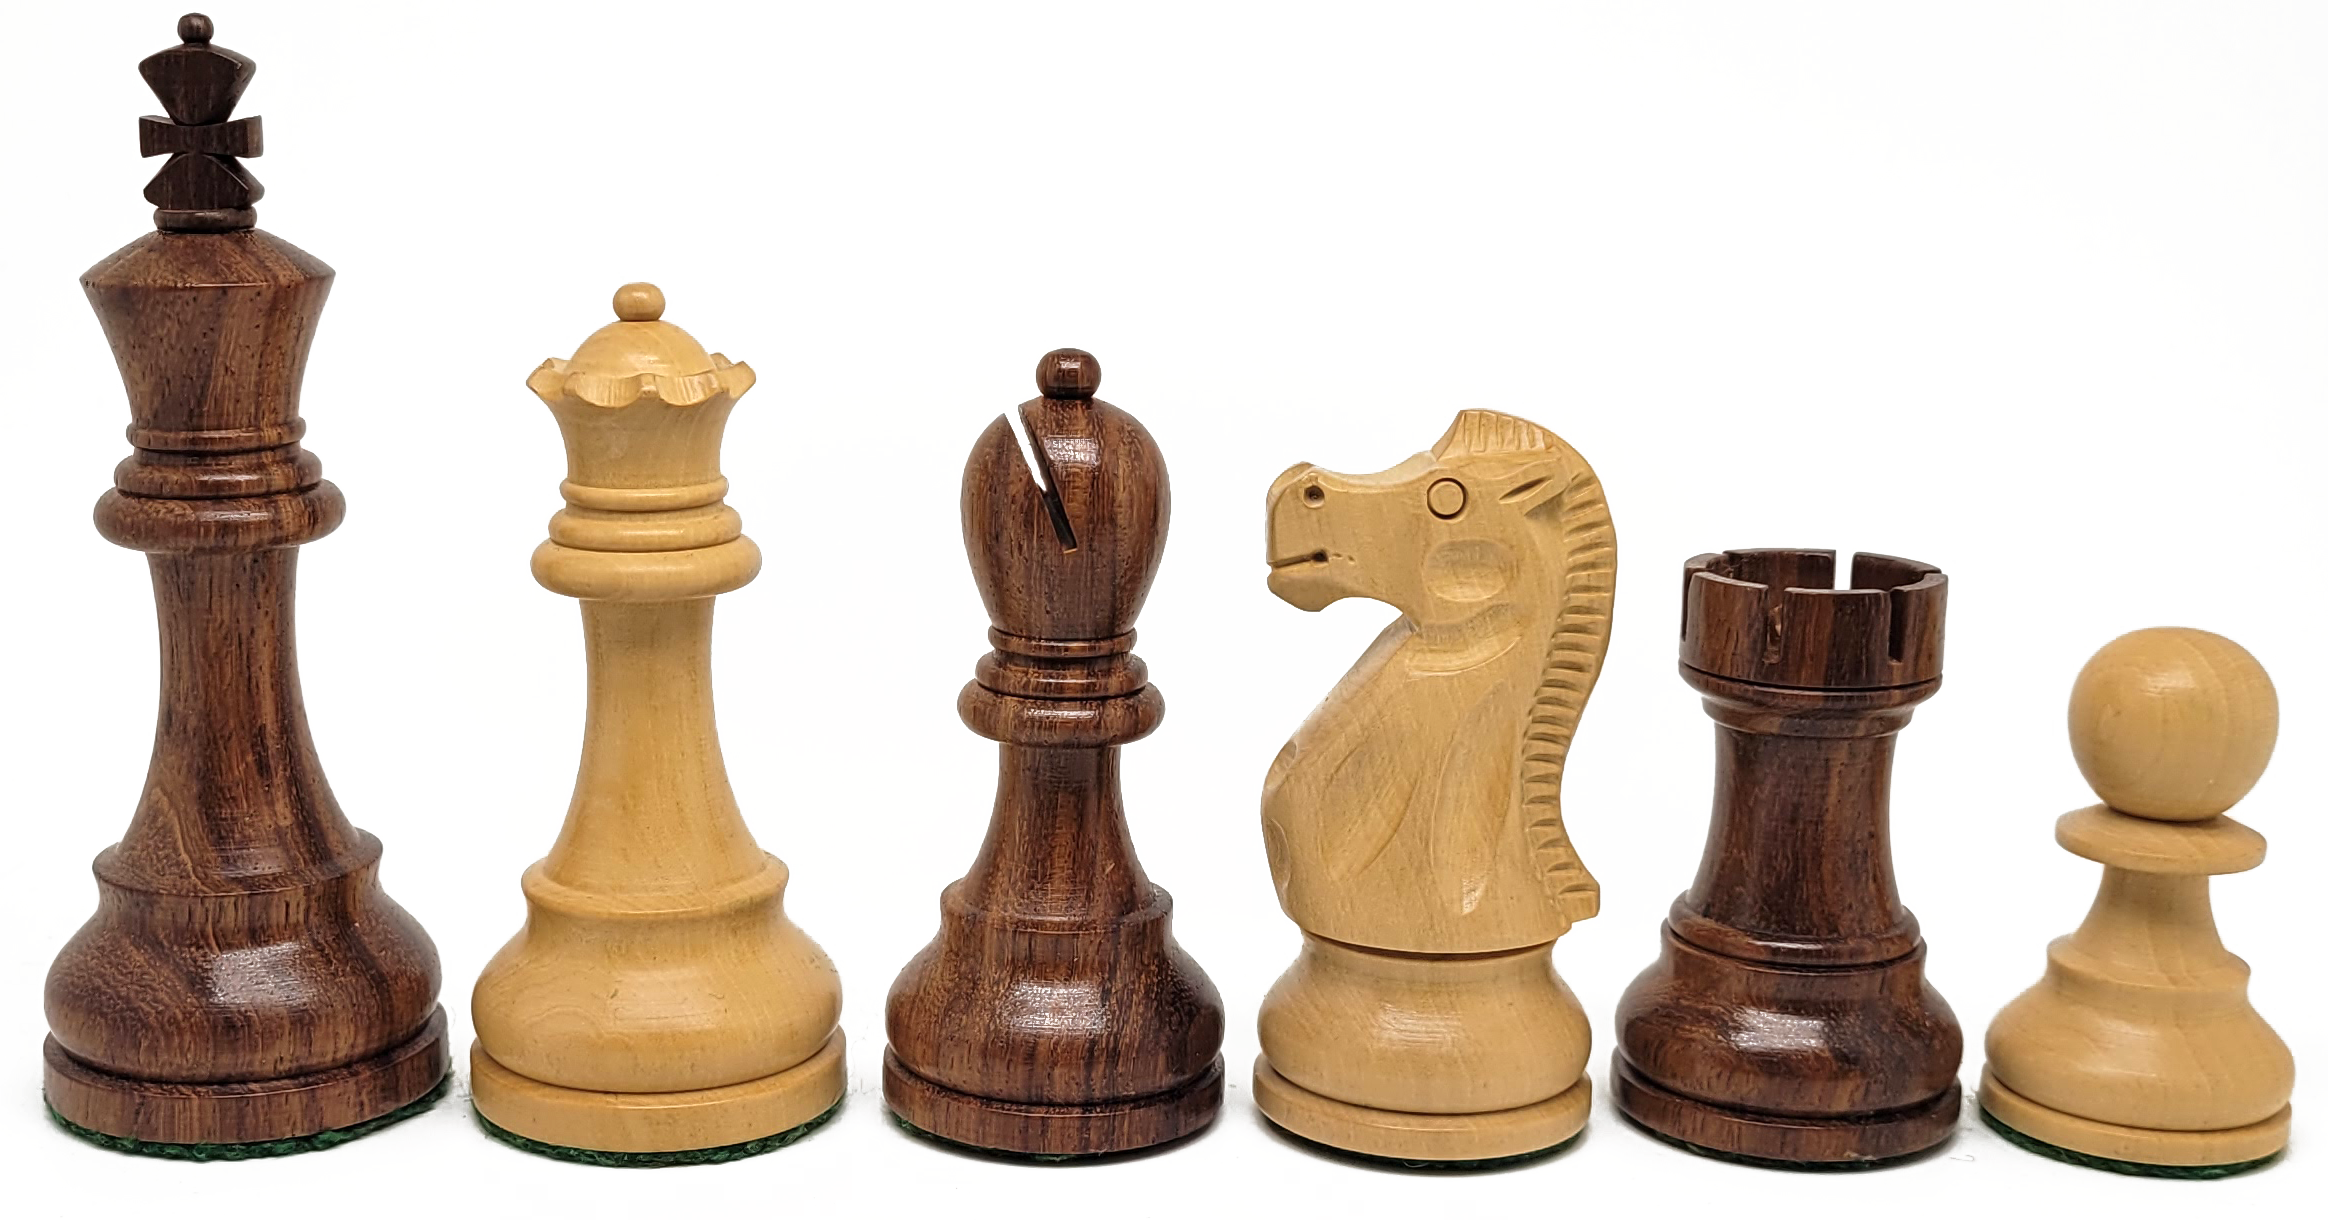 VI/ Piezas de ajedrez modelo Fischer - Spassky "3,50" Shisham.